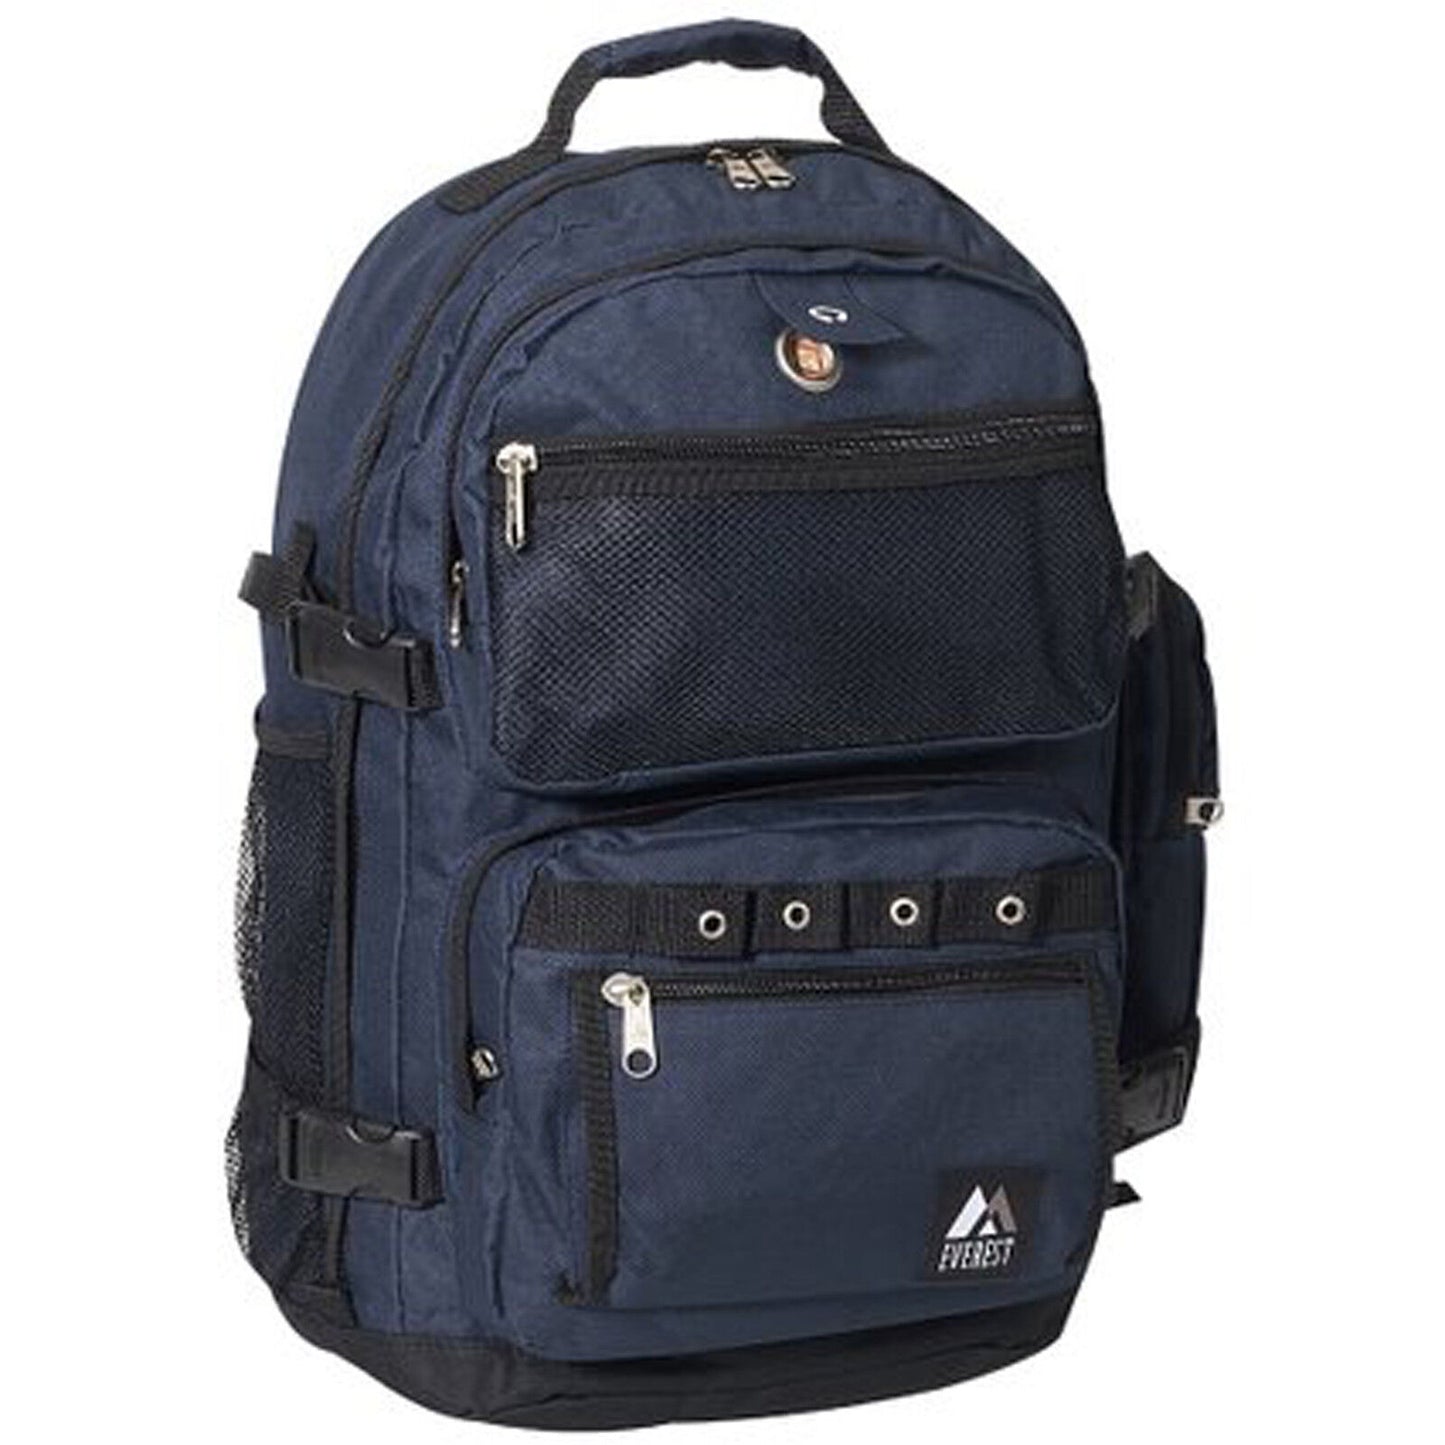 Everest Backpack 3045R Choose Color BeReadyFoods.com